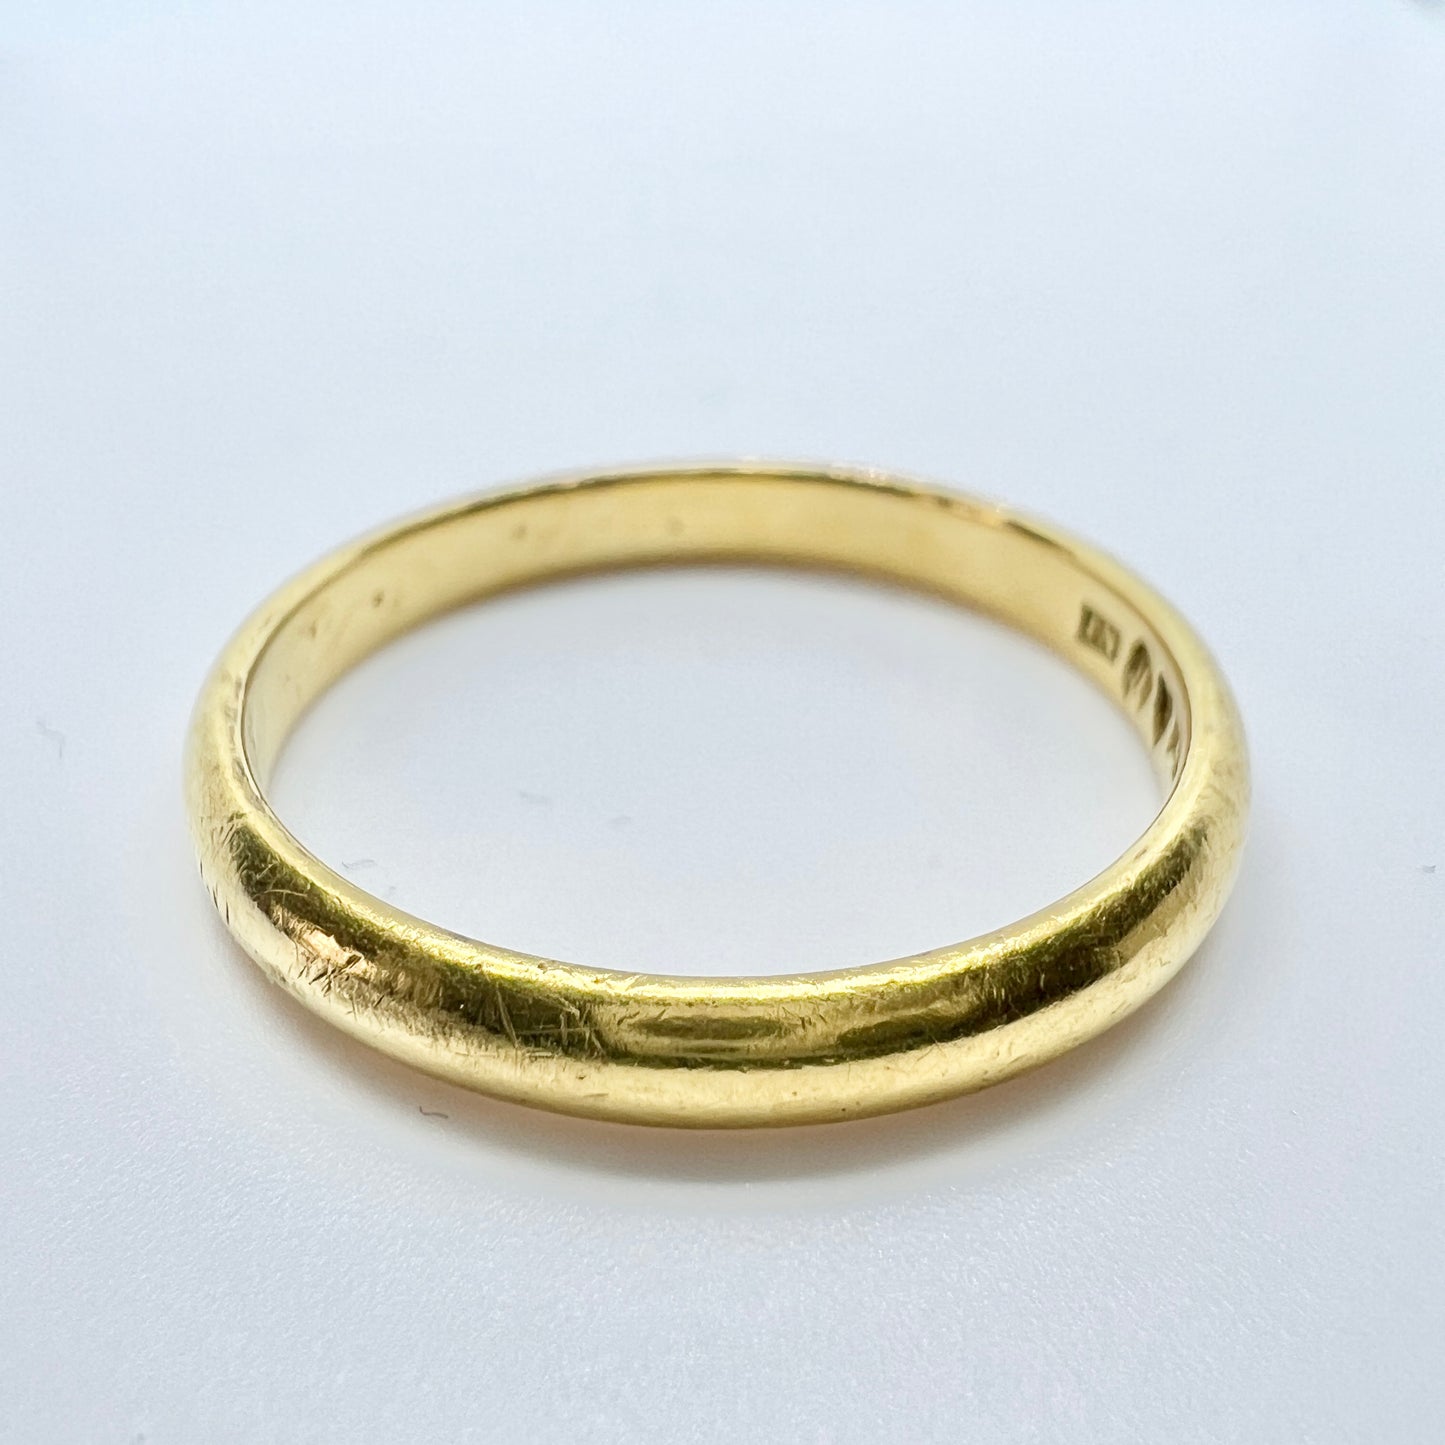 T Nordström, Sweden 1911. Antique 20k Gold Men's Wedding Band Ring.